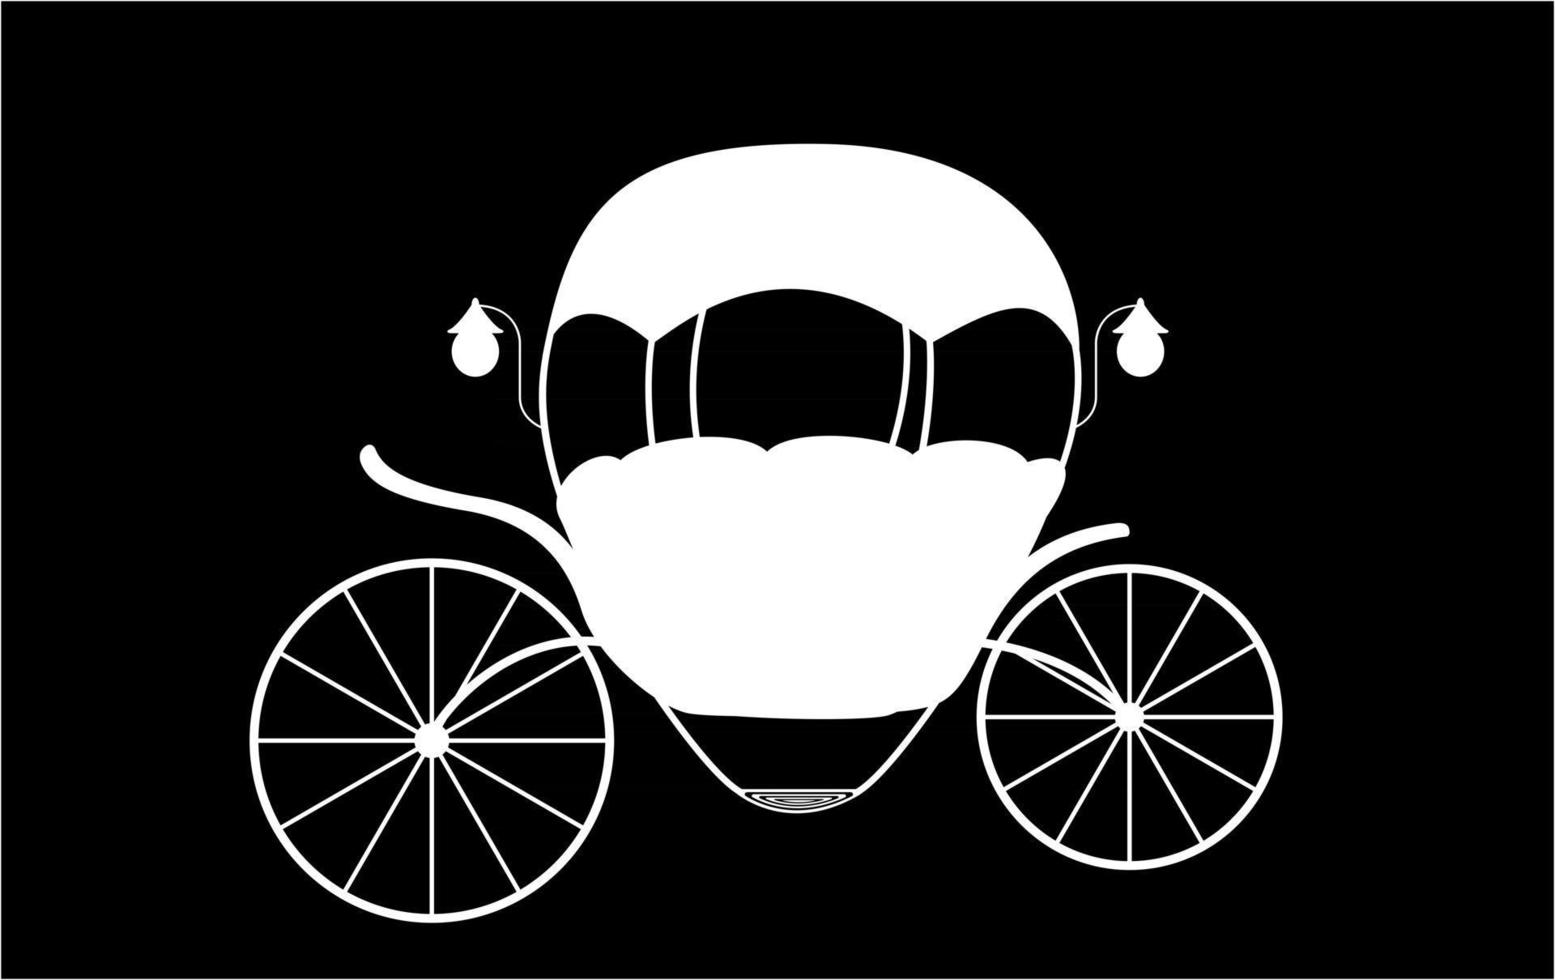 carruaje de cuento de hadas de Cenicienta en blanco y negro. ilustración vectorial vector